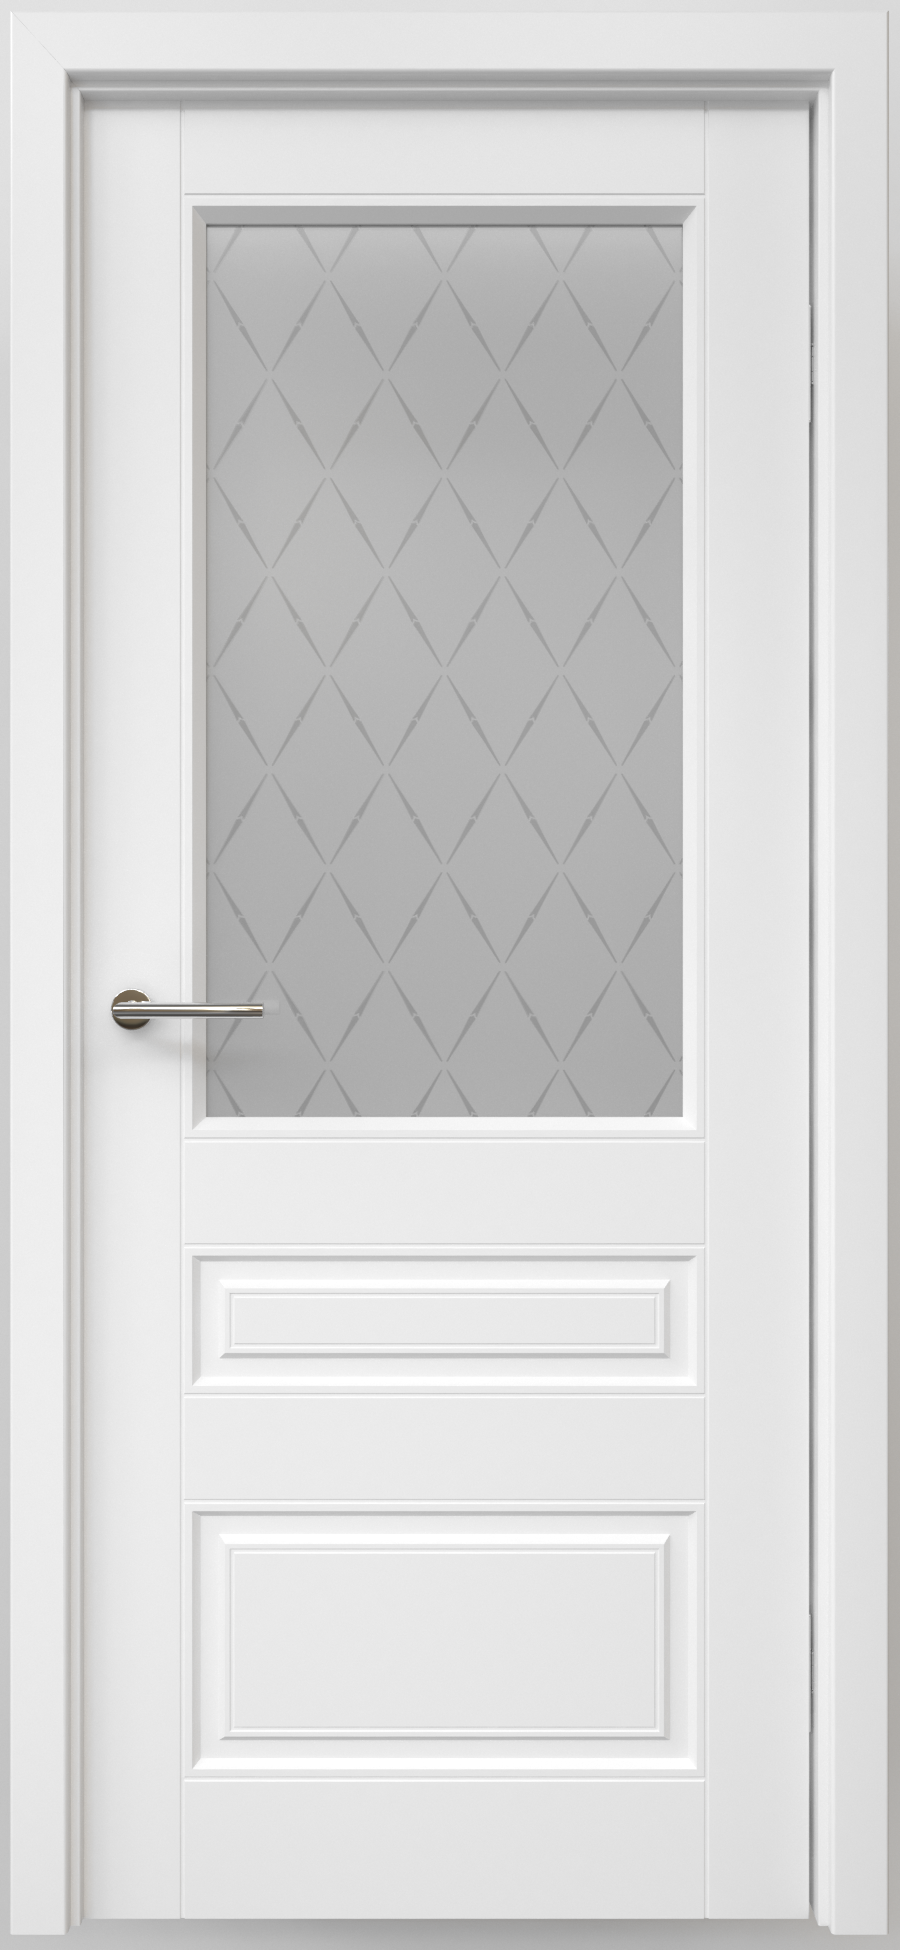 Полотно дверное остекленное Эмаль Классика-3 ЛЕВОЕ 700 белый ст. мателюкс "Лорд мат" (защелка маг)